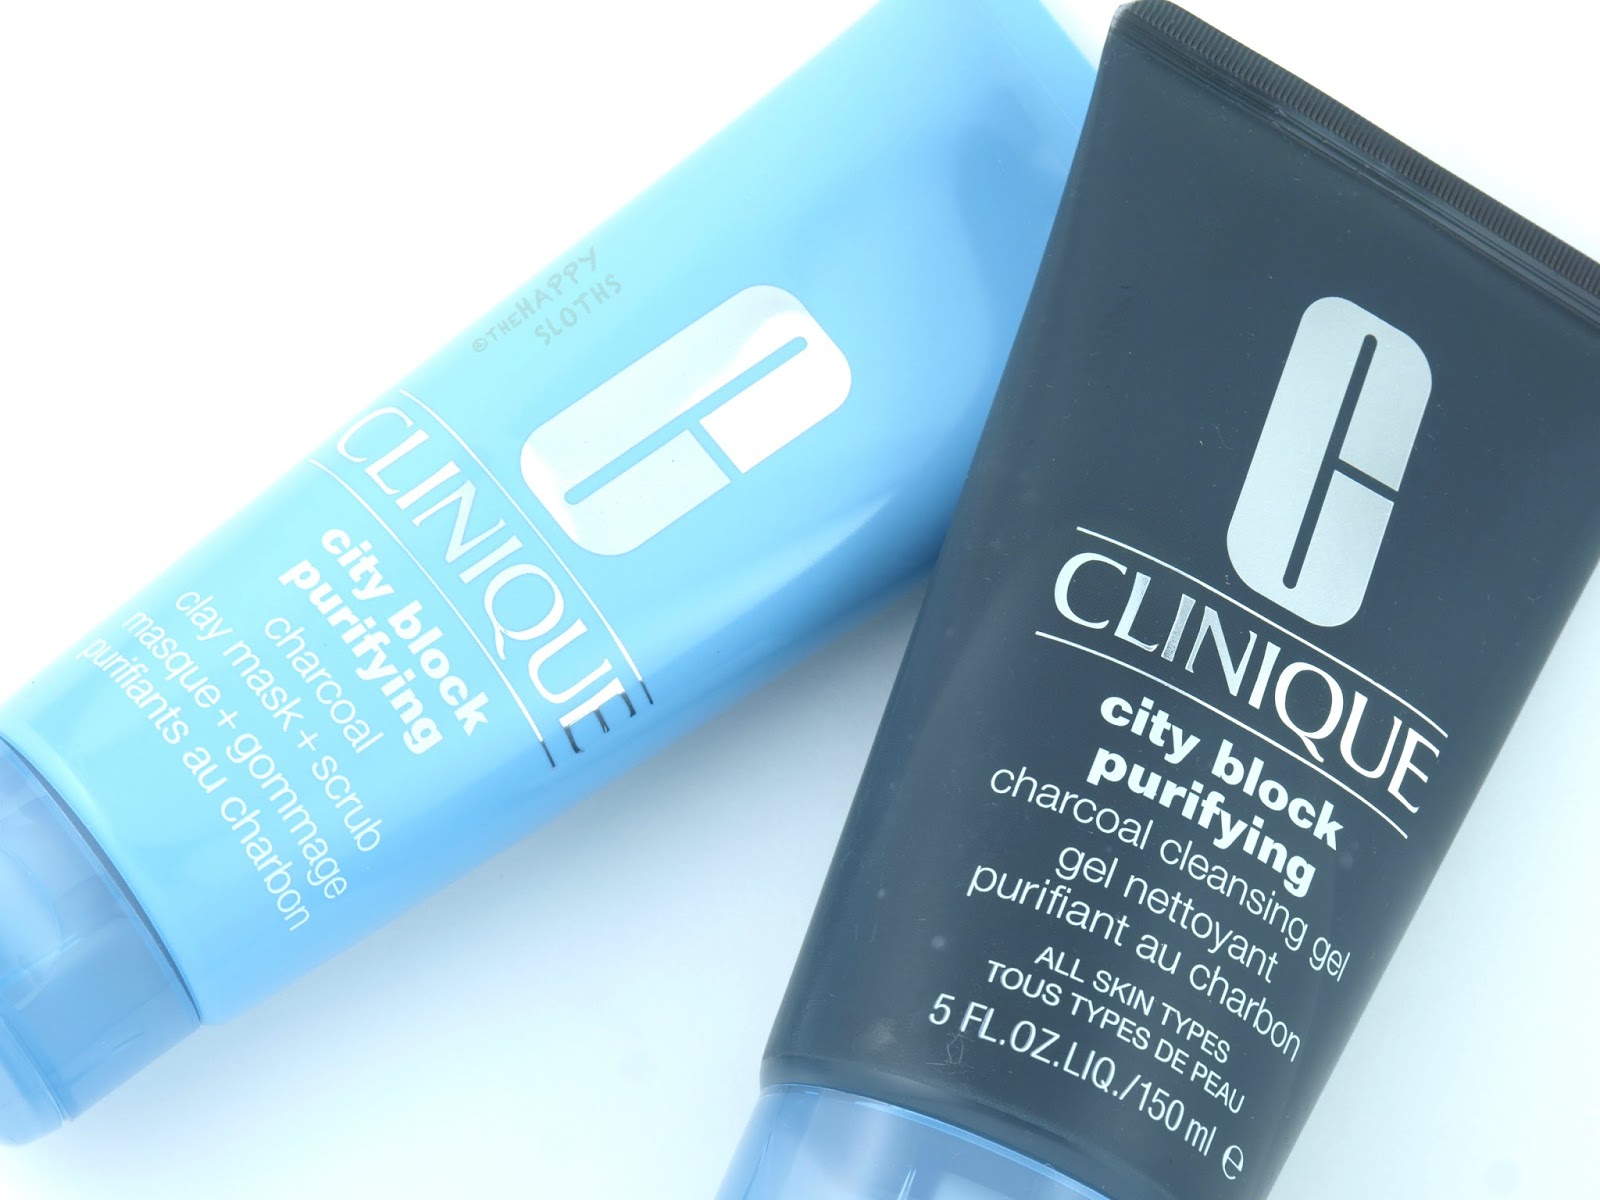 Clay gel. Clinique all about clean 2 in 1 Charcoal Mask Scrub. Clinique гель для глубокого очищения кожи City Block.